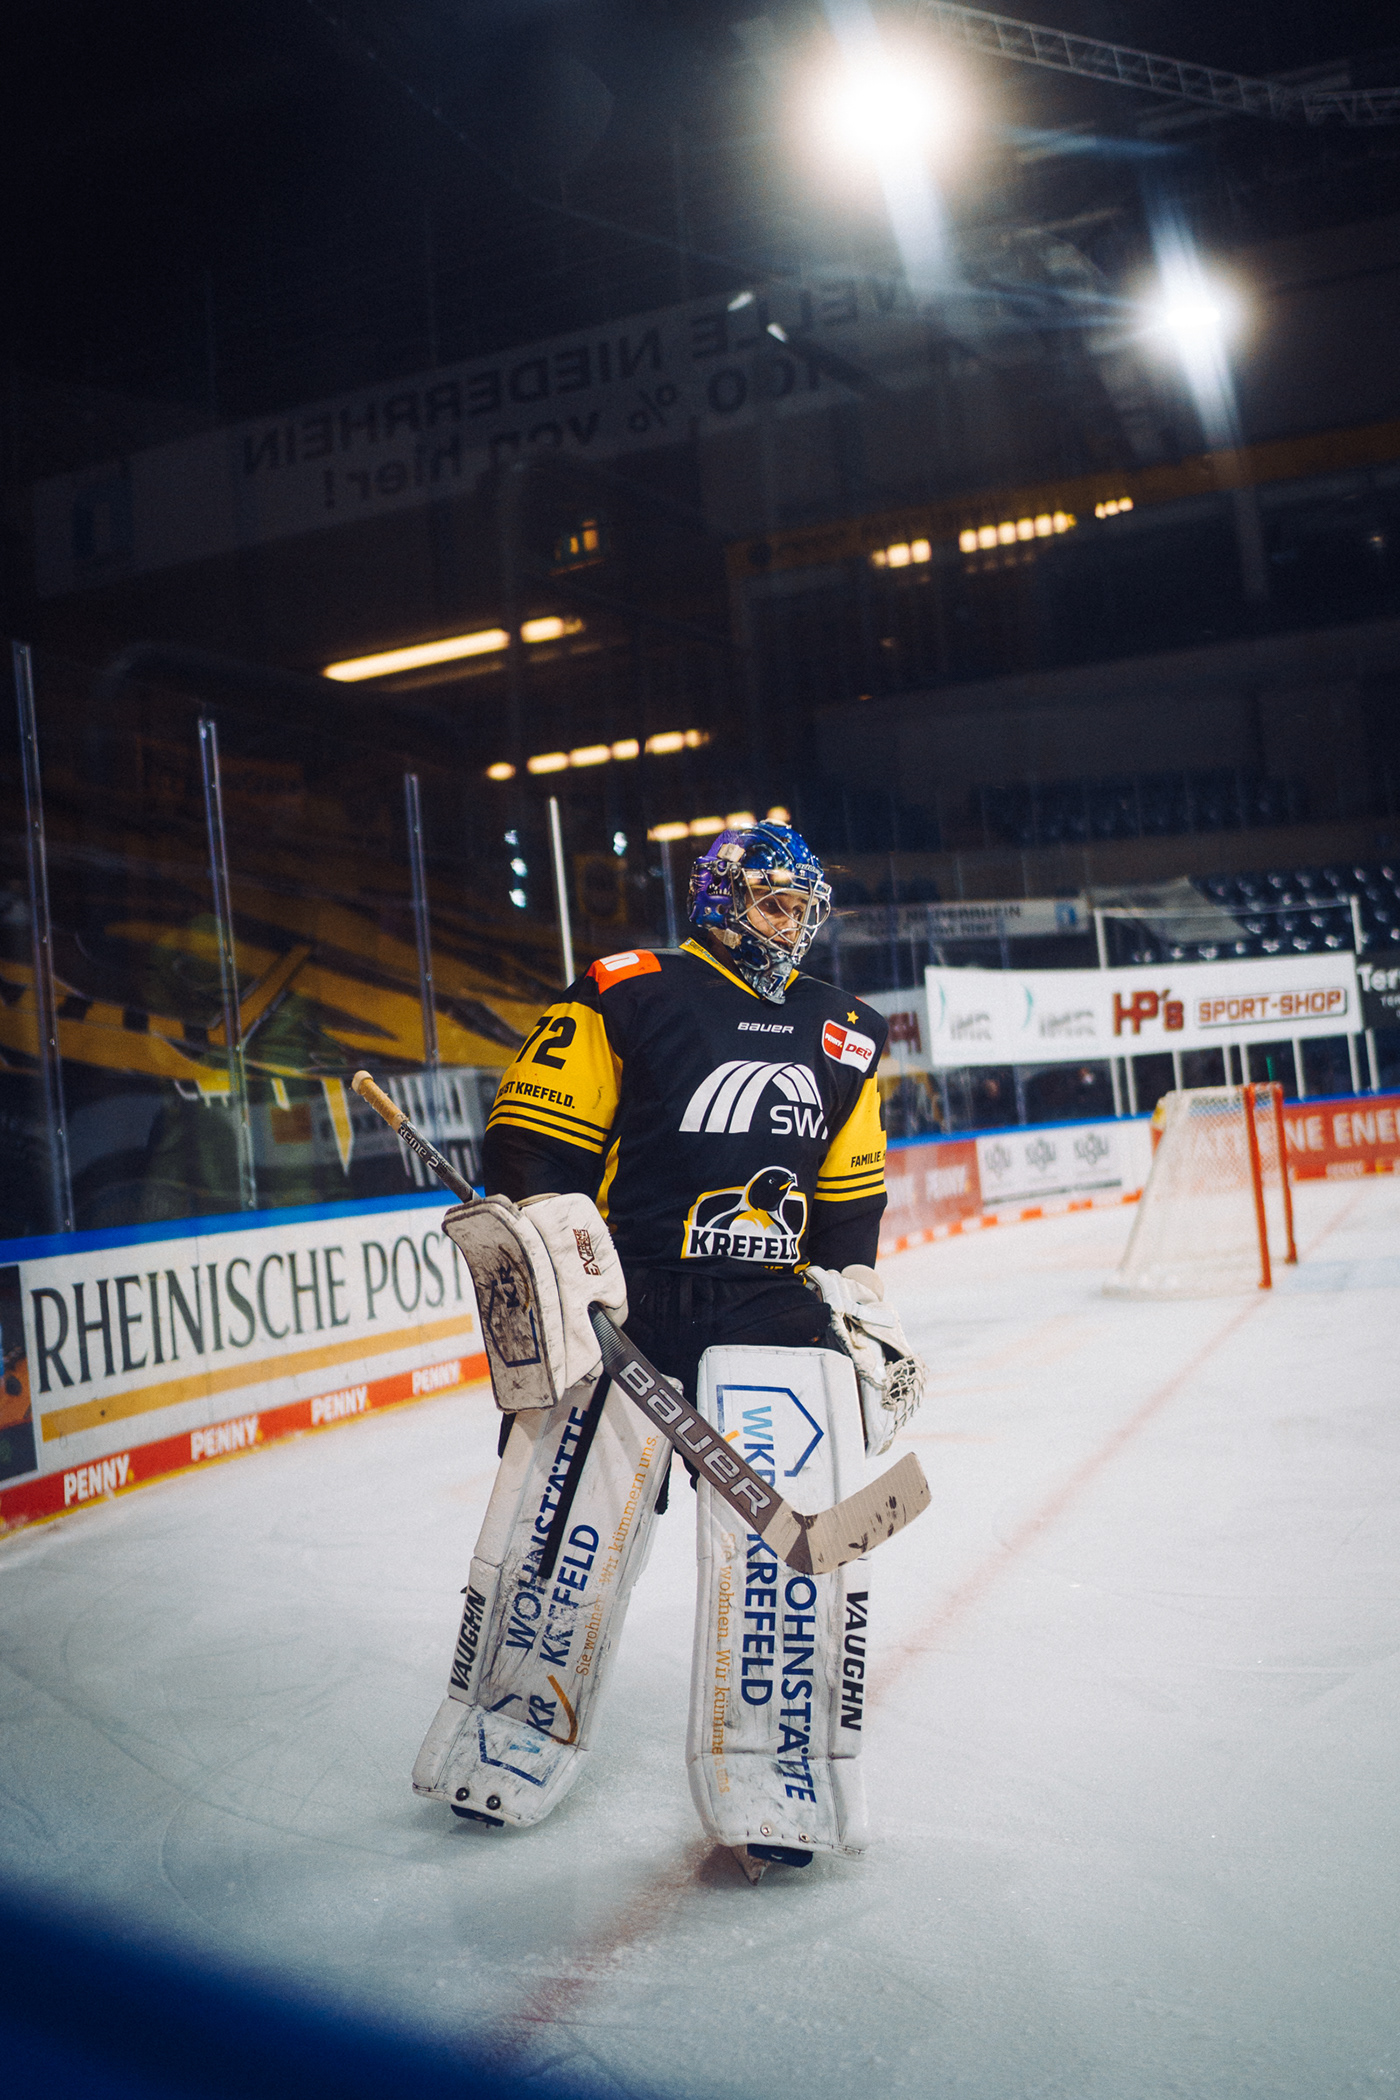 Eishockey Icehockey Kölner Haie krefeld pinguine reportage sport sportfotografie sportlerbegleitung sports Wintersport